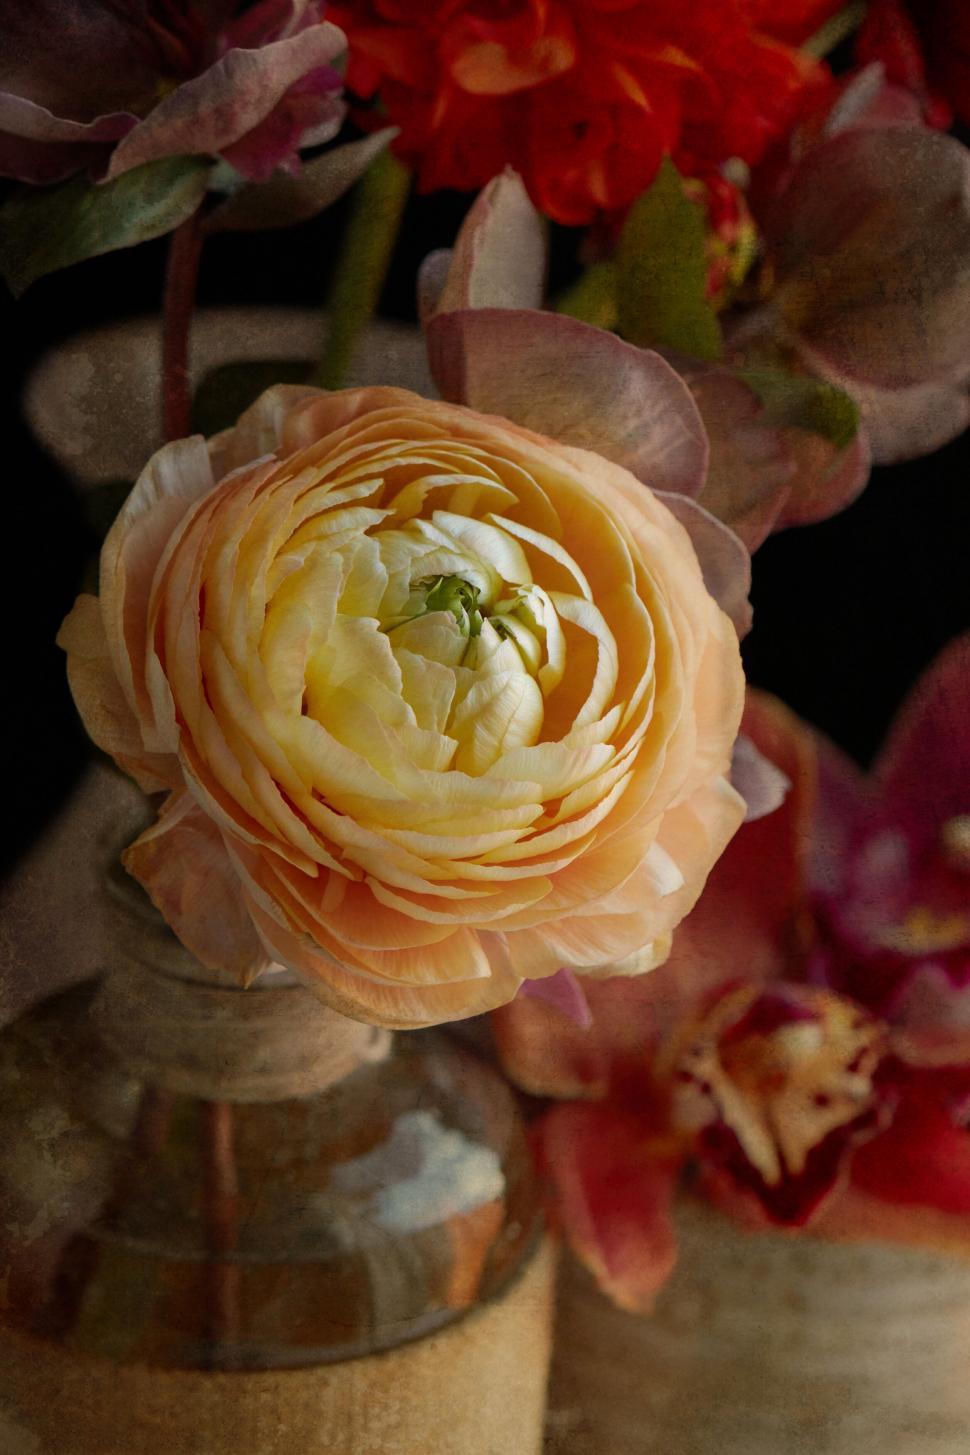 Free Image of Vintage Styled Floral Arrangement Still Life 